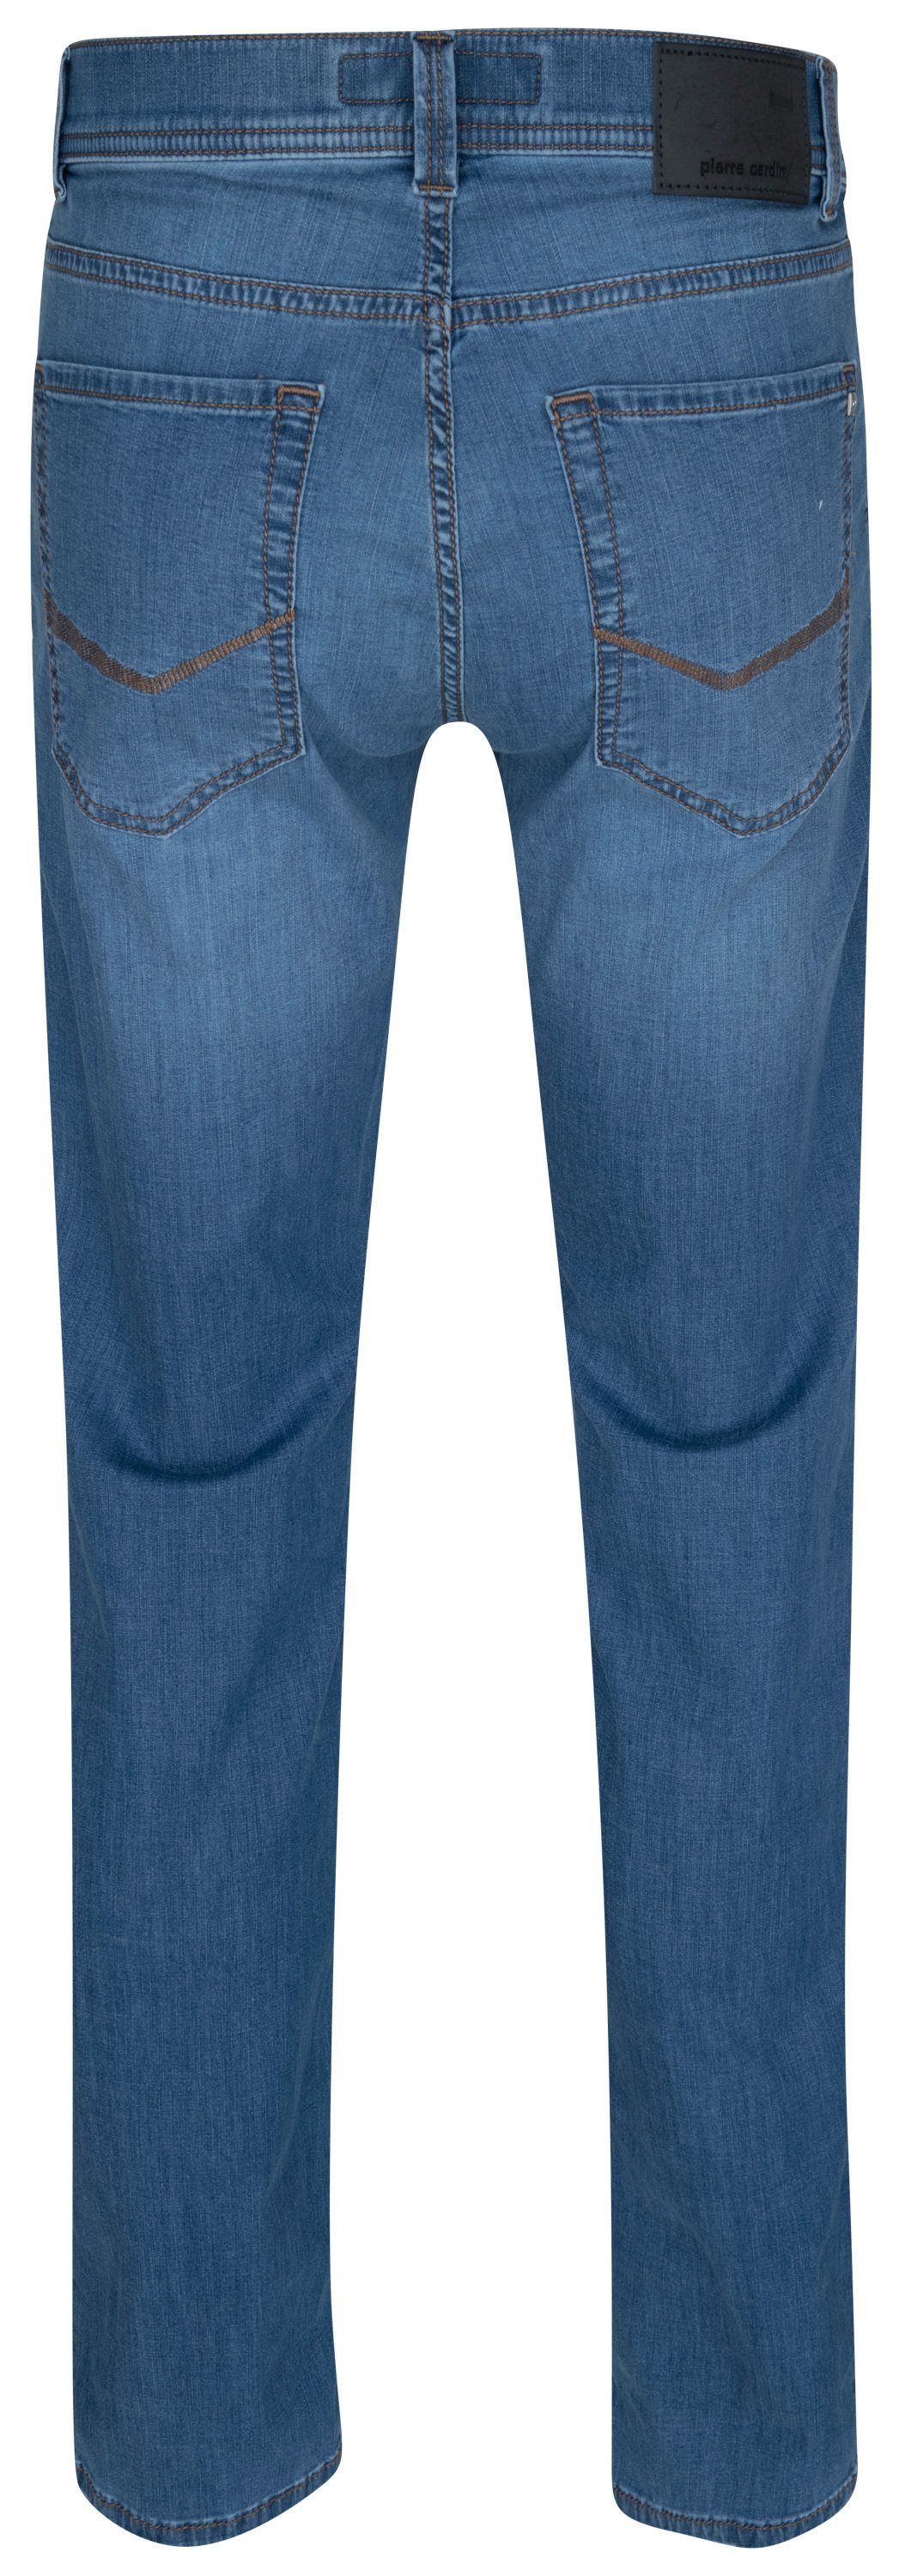 5-Pocket-Jeans CARDIN - PIERRE fashion 7730.6837 34510 FUTURE TAPERED blue Pierre ocean LYON Cardin